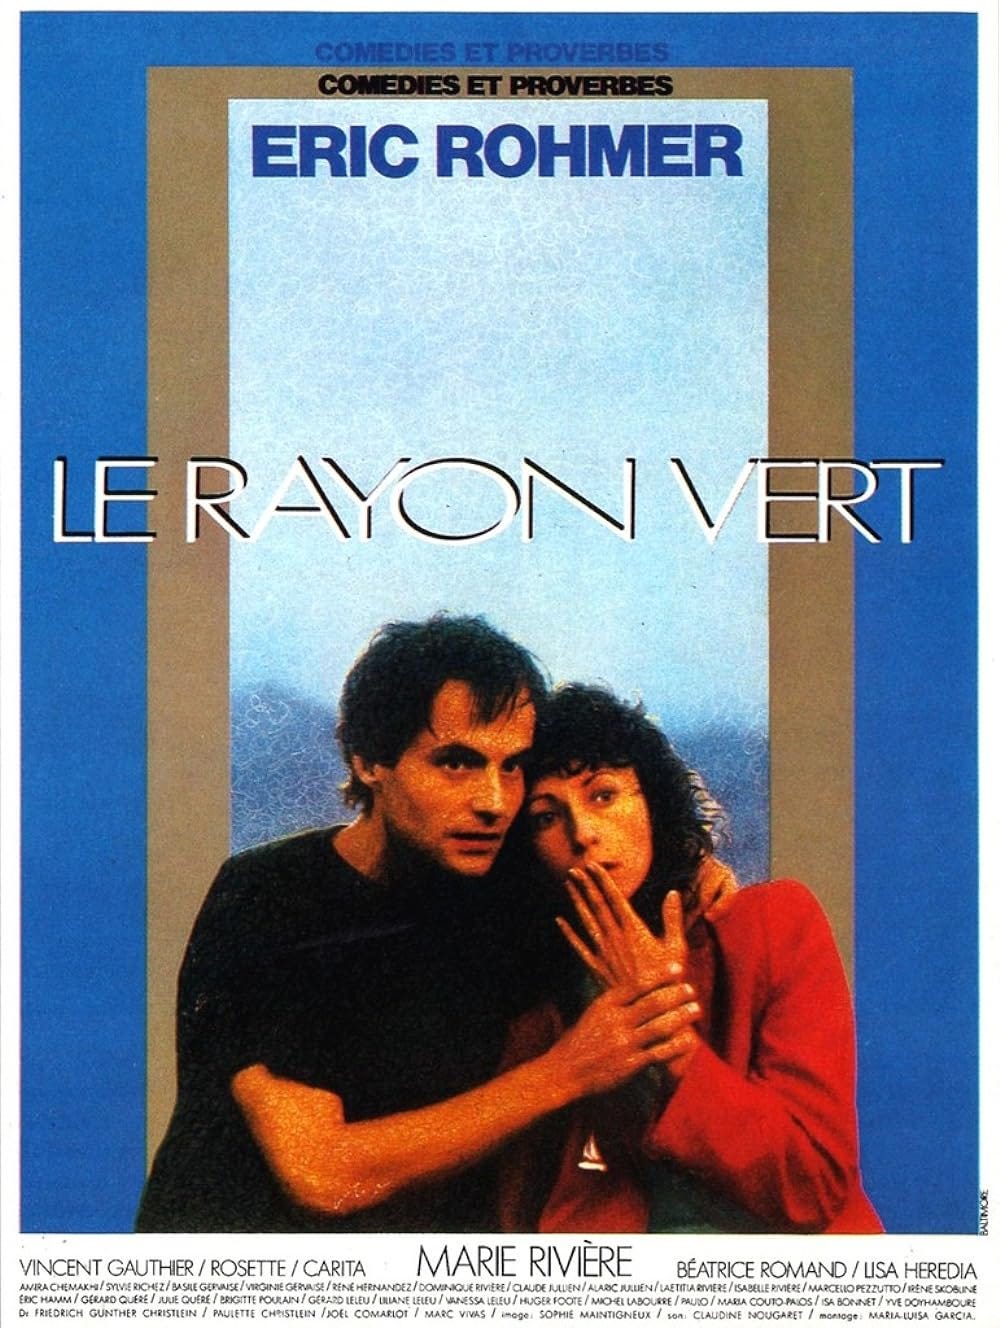 Le rayon vert (1986) - IMDb